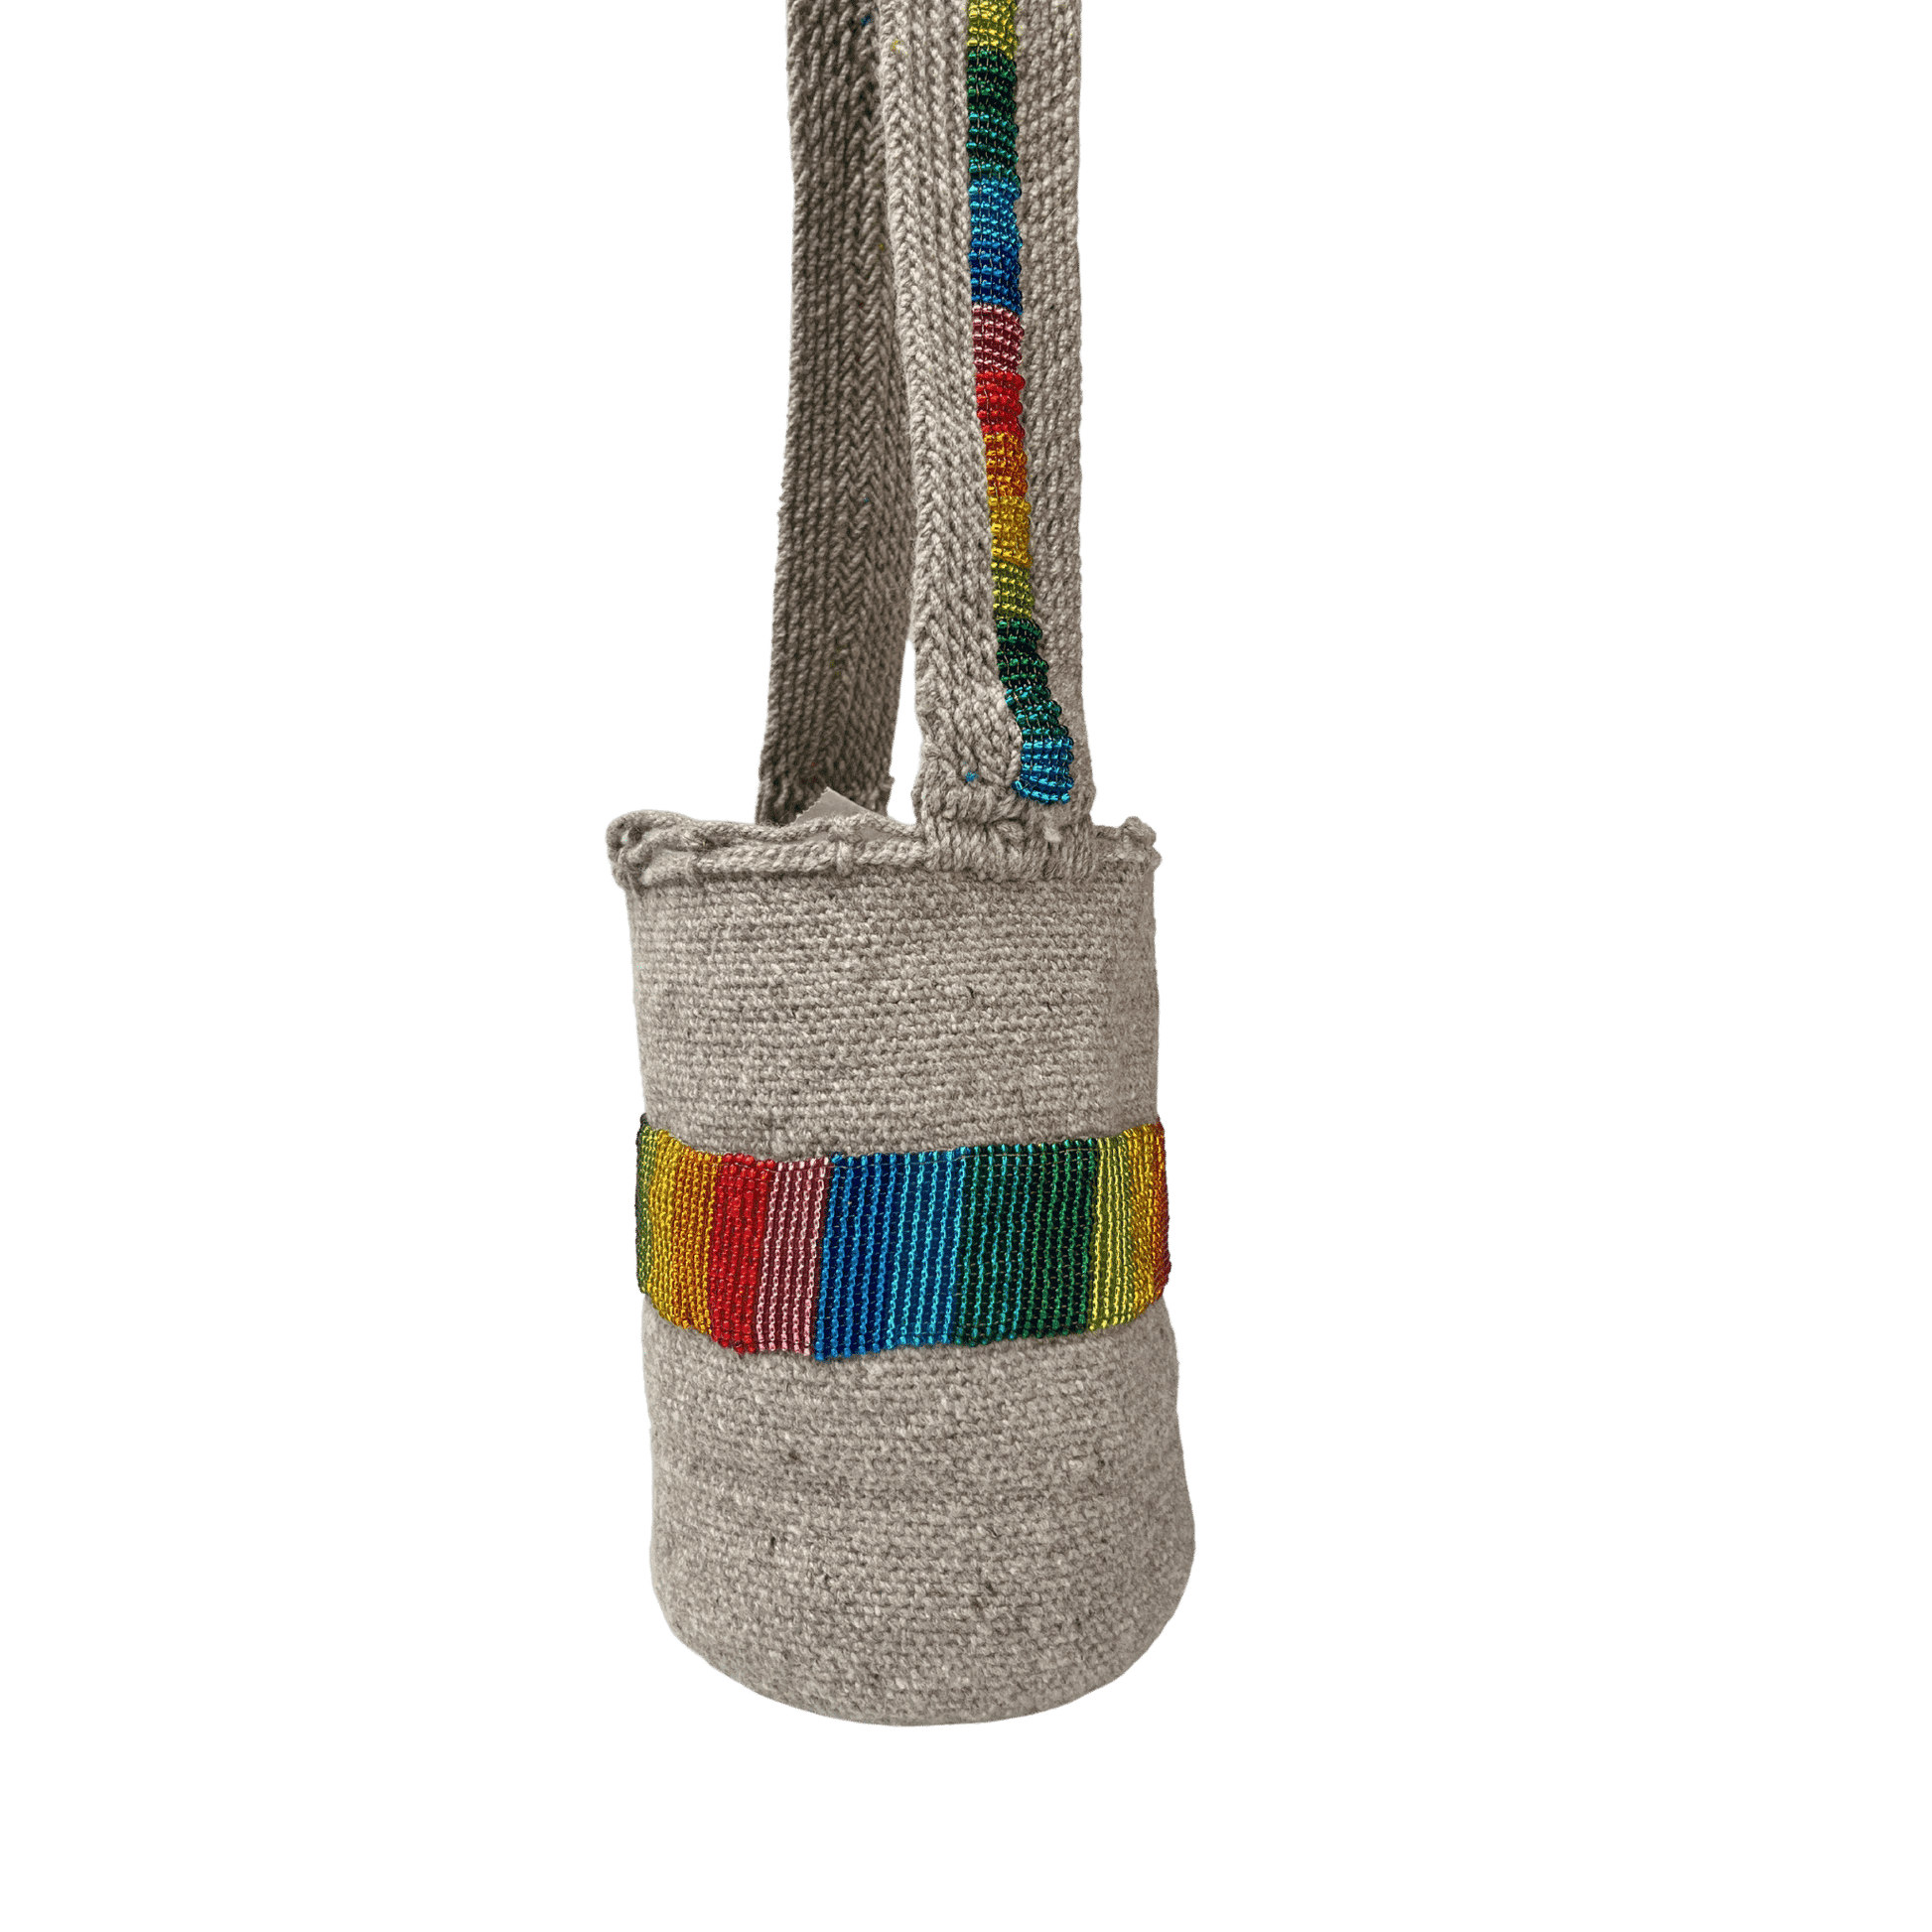 Bolso arhuaca recamado a mano con chaquiras de colores del arcoiris